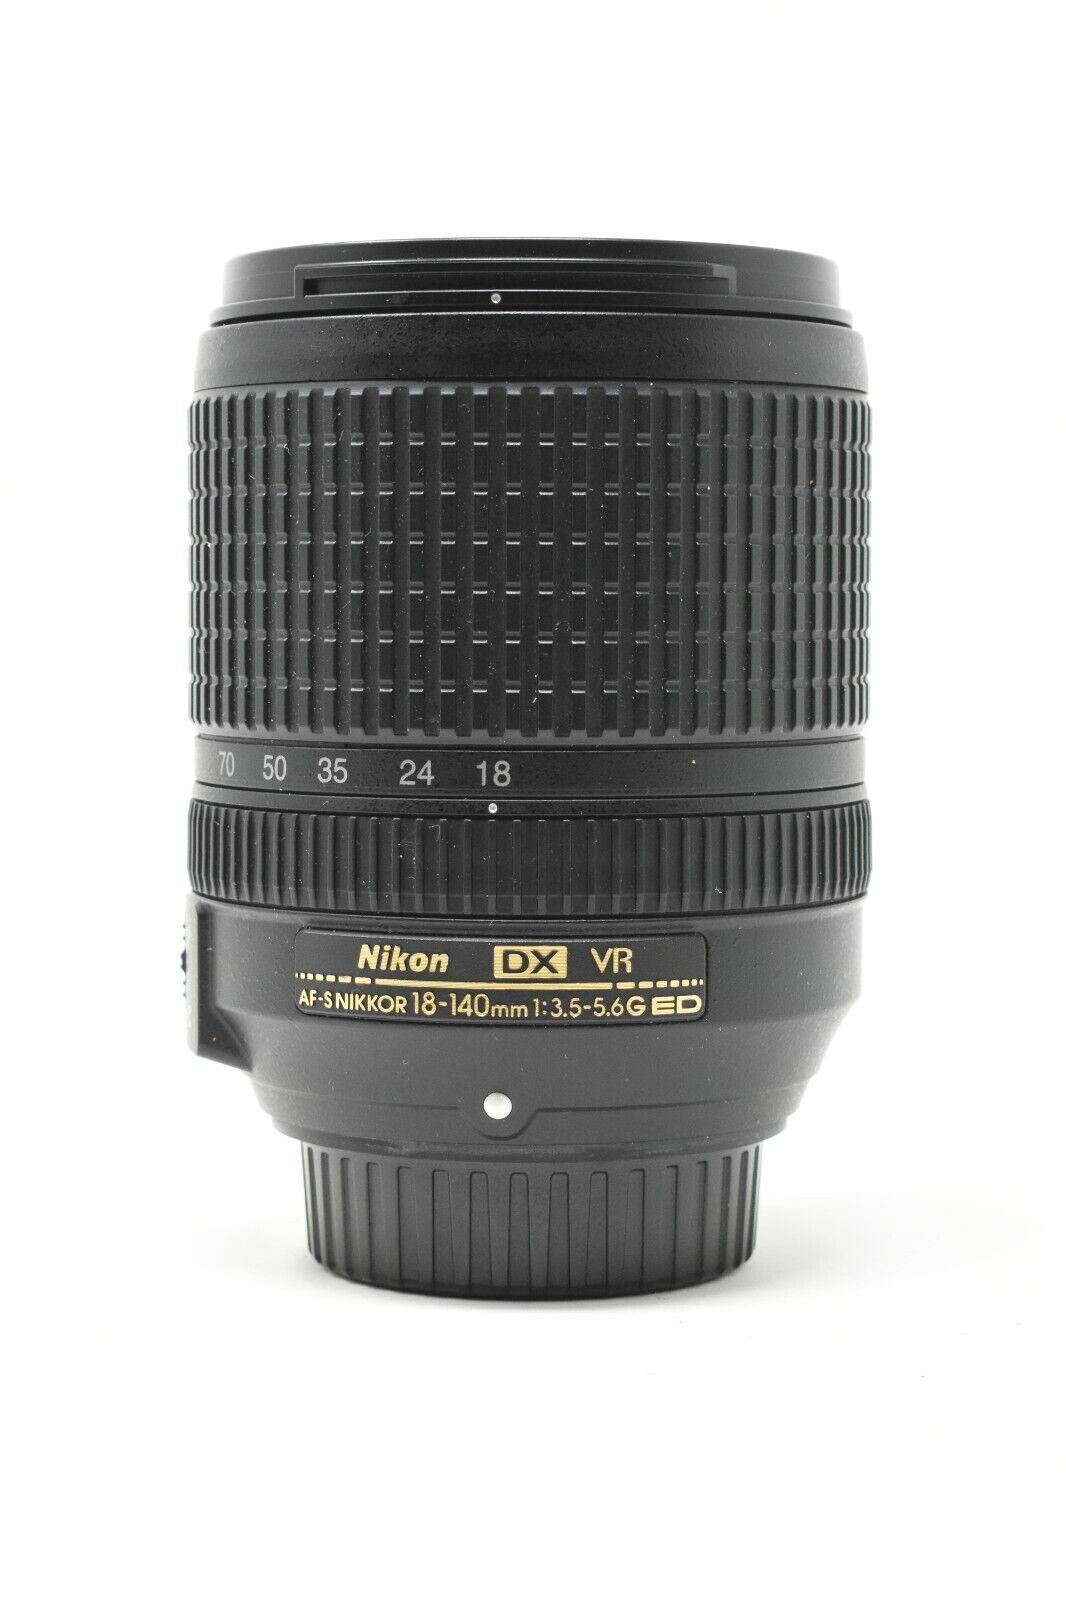 Nikon 18-140mm f/3.5-5.6G ED VR AF-S DX Zoom Lens Nikon 2213